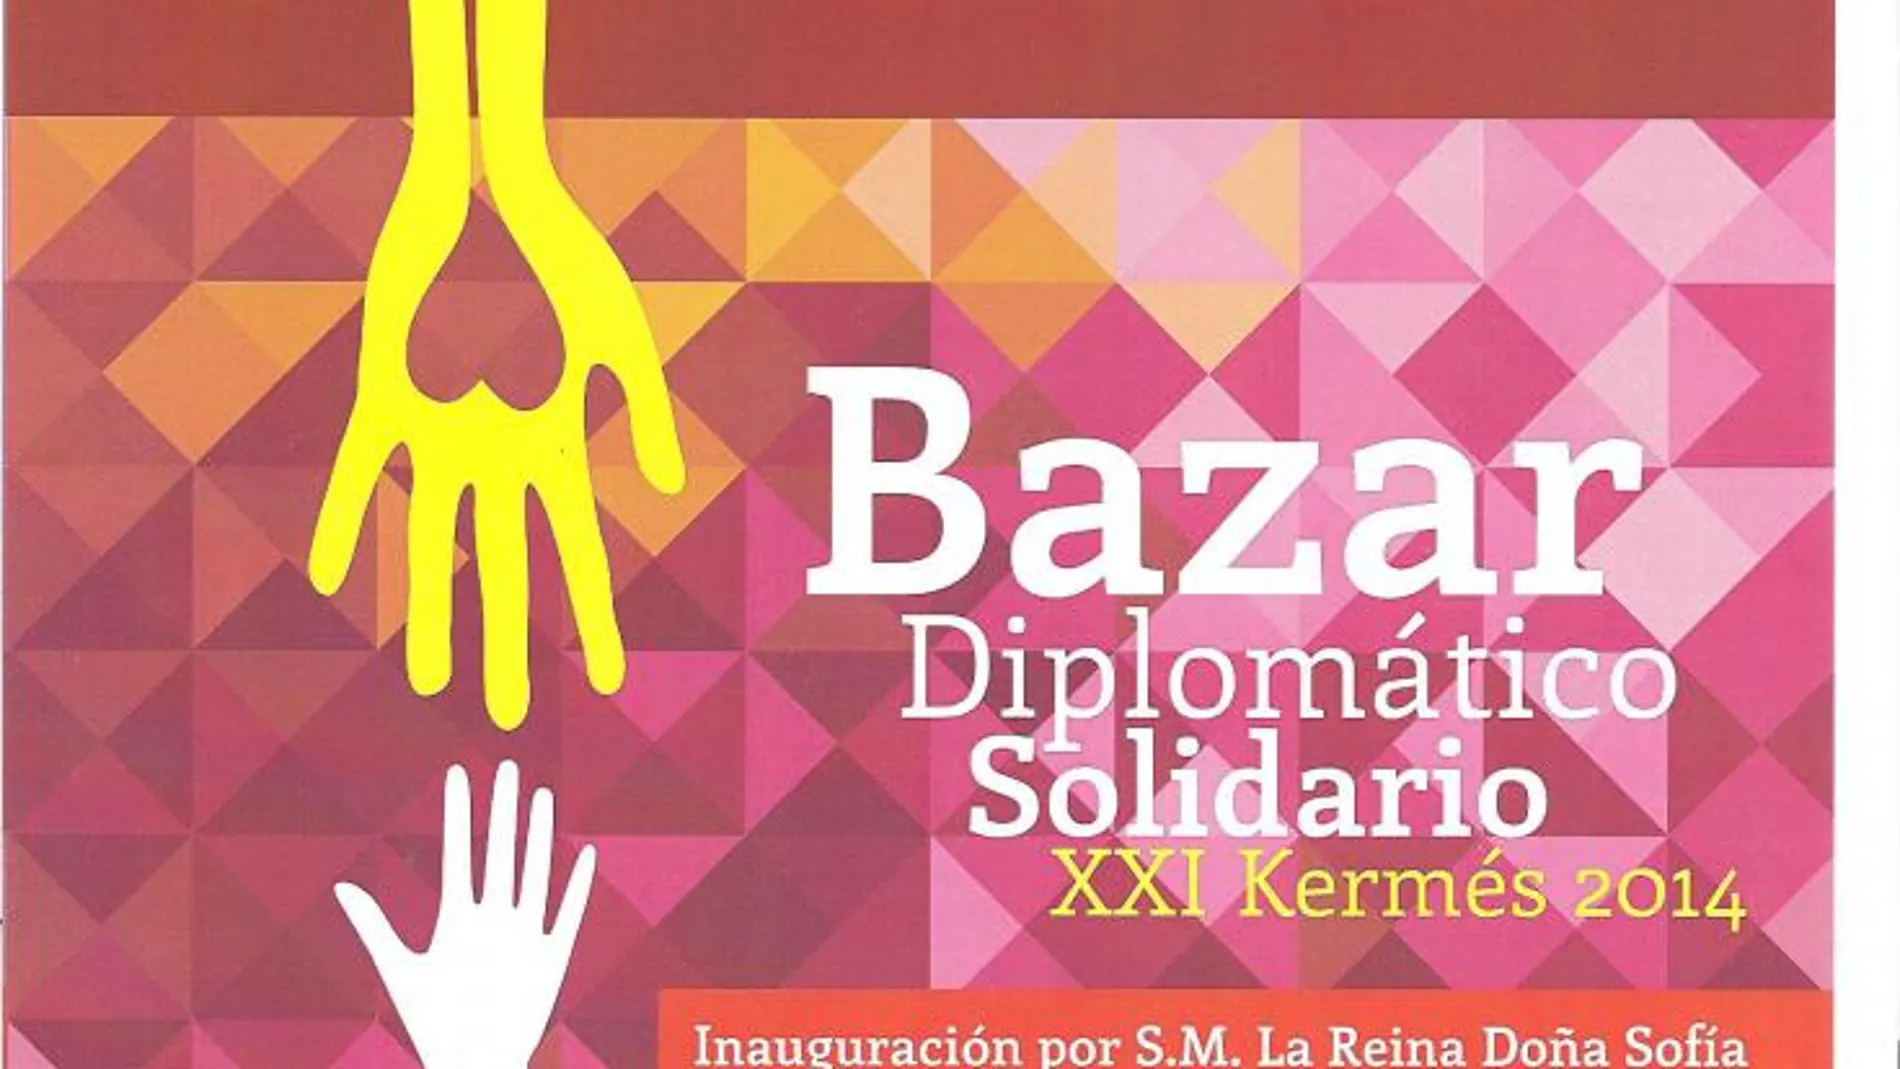 Madrid acoge el Bazar Benéfico Solidario de las Embajadas XXI Kermés 2014